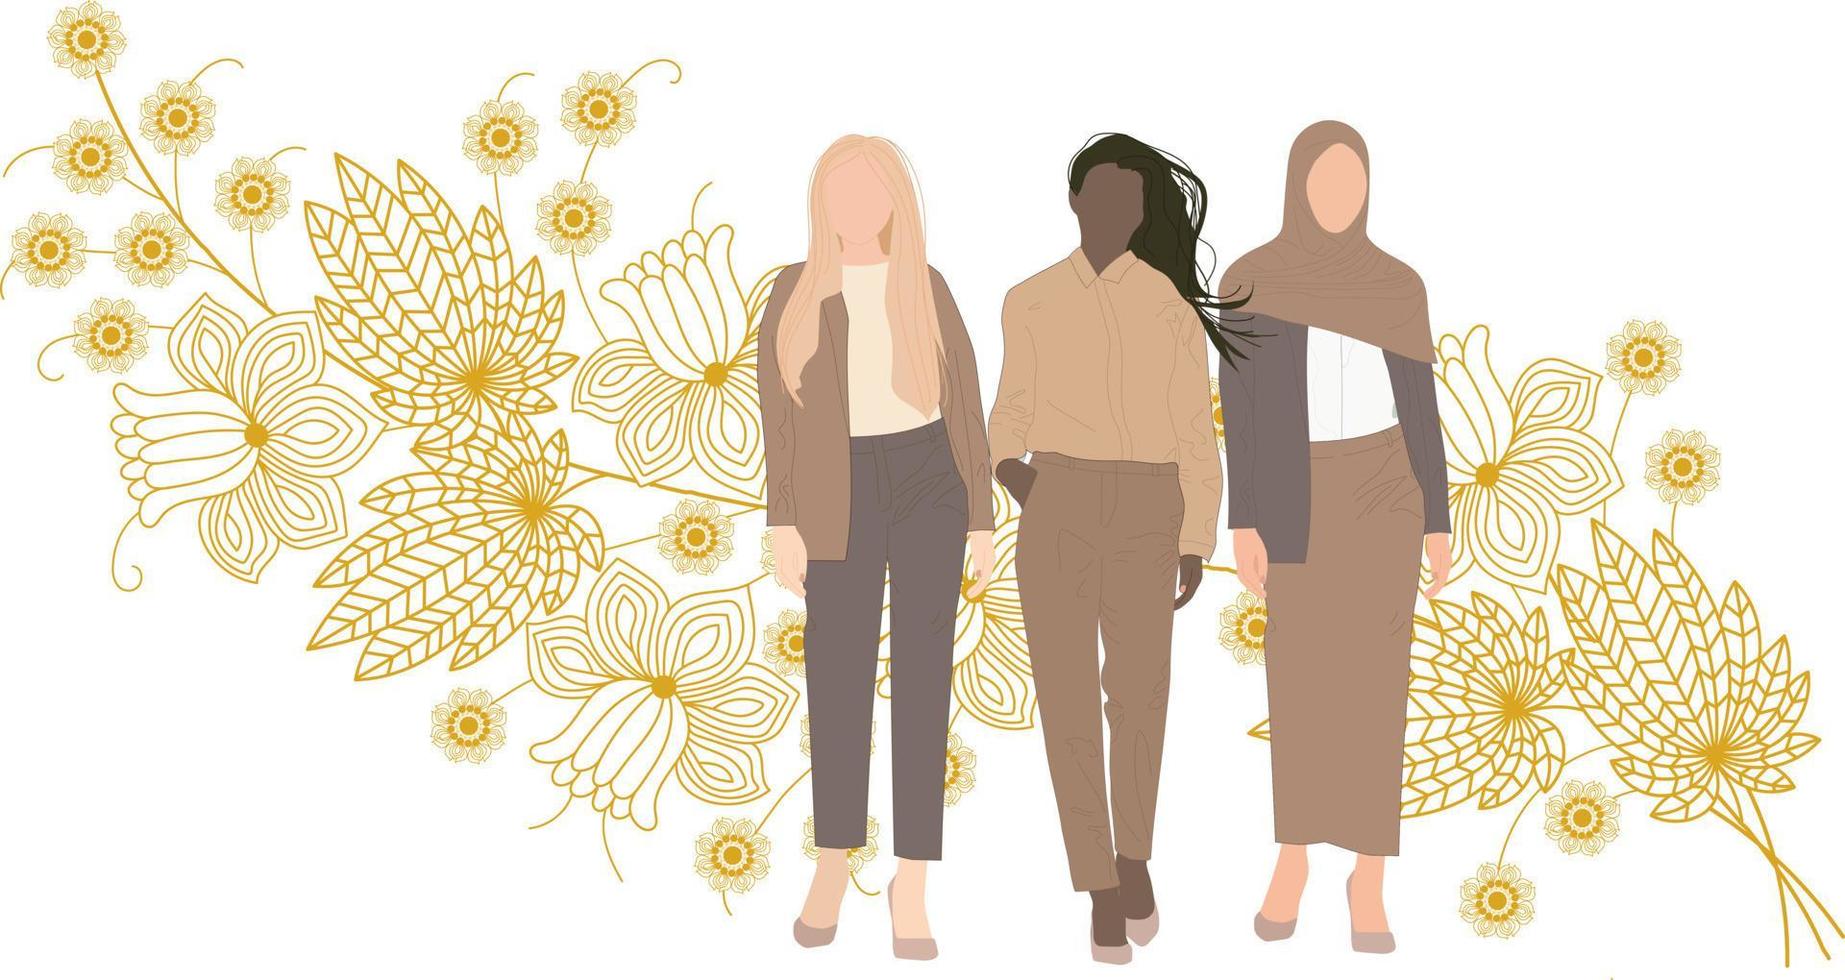 Frauen unterschiedlicher Nationalität, Glauben und Hautfarbe zusammen. vektor